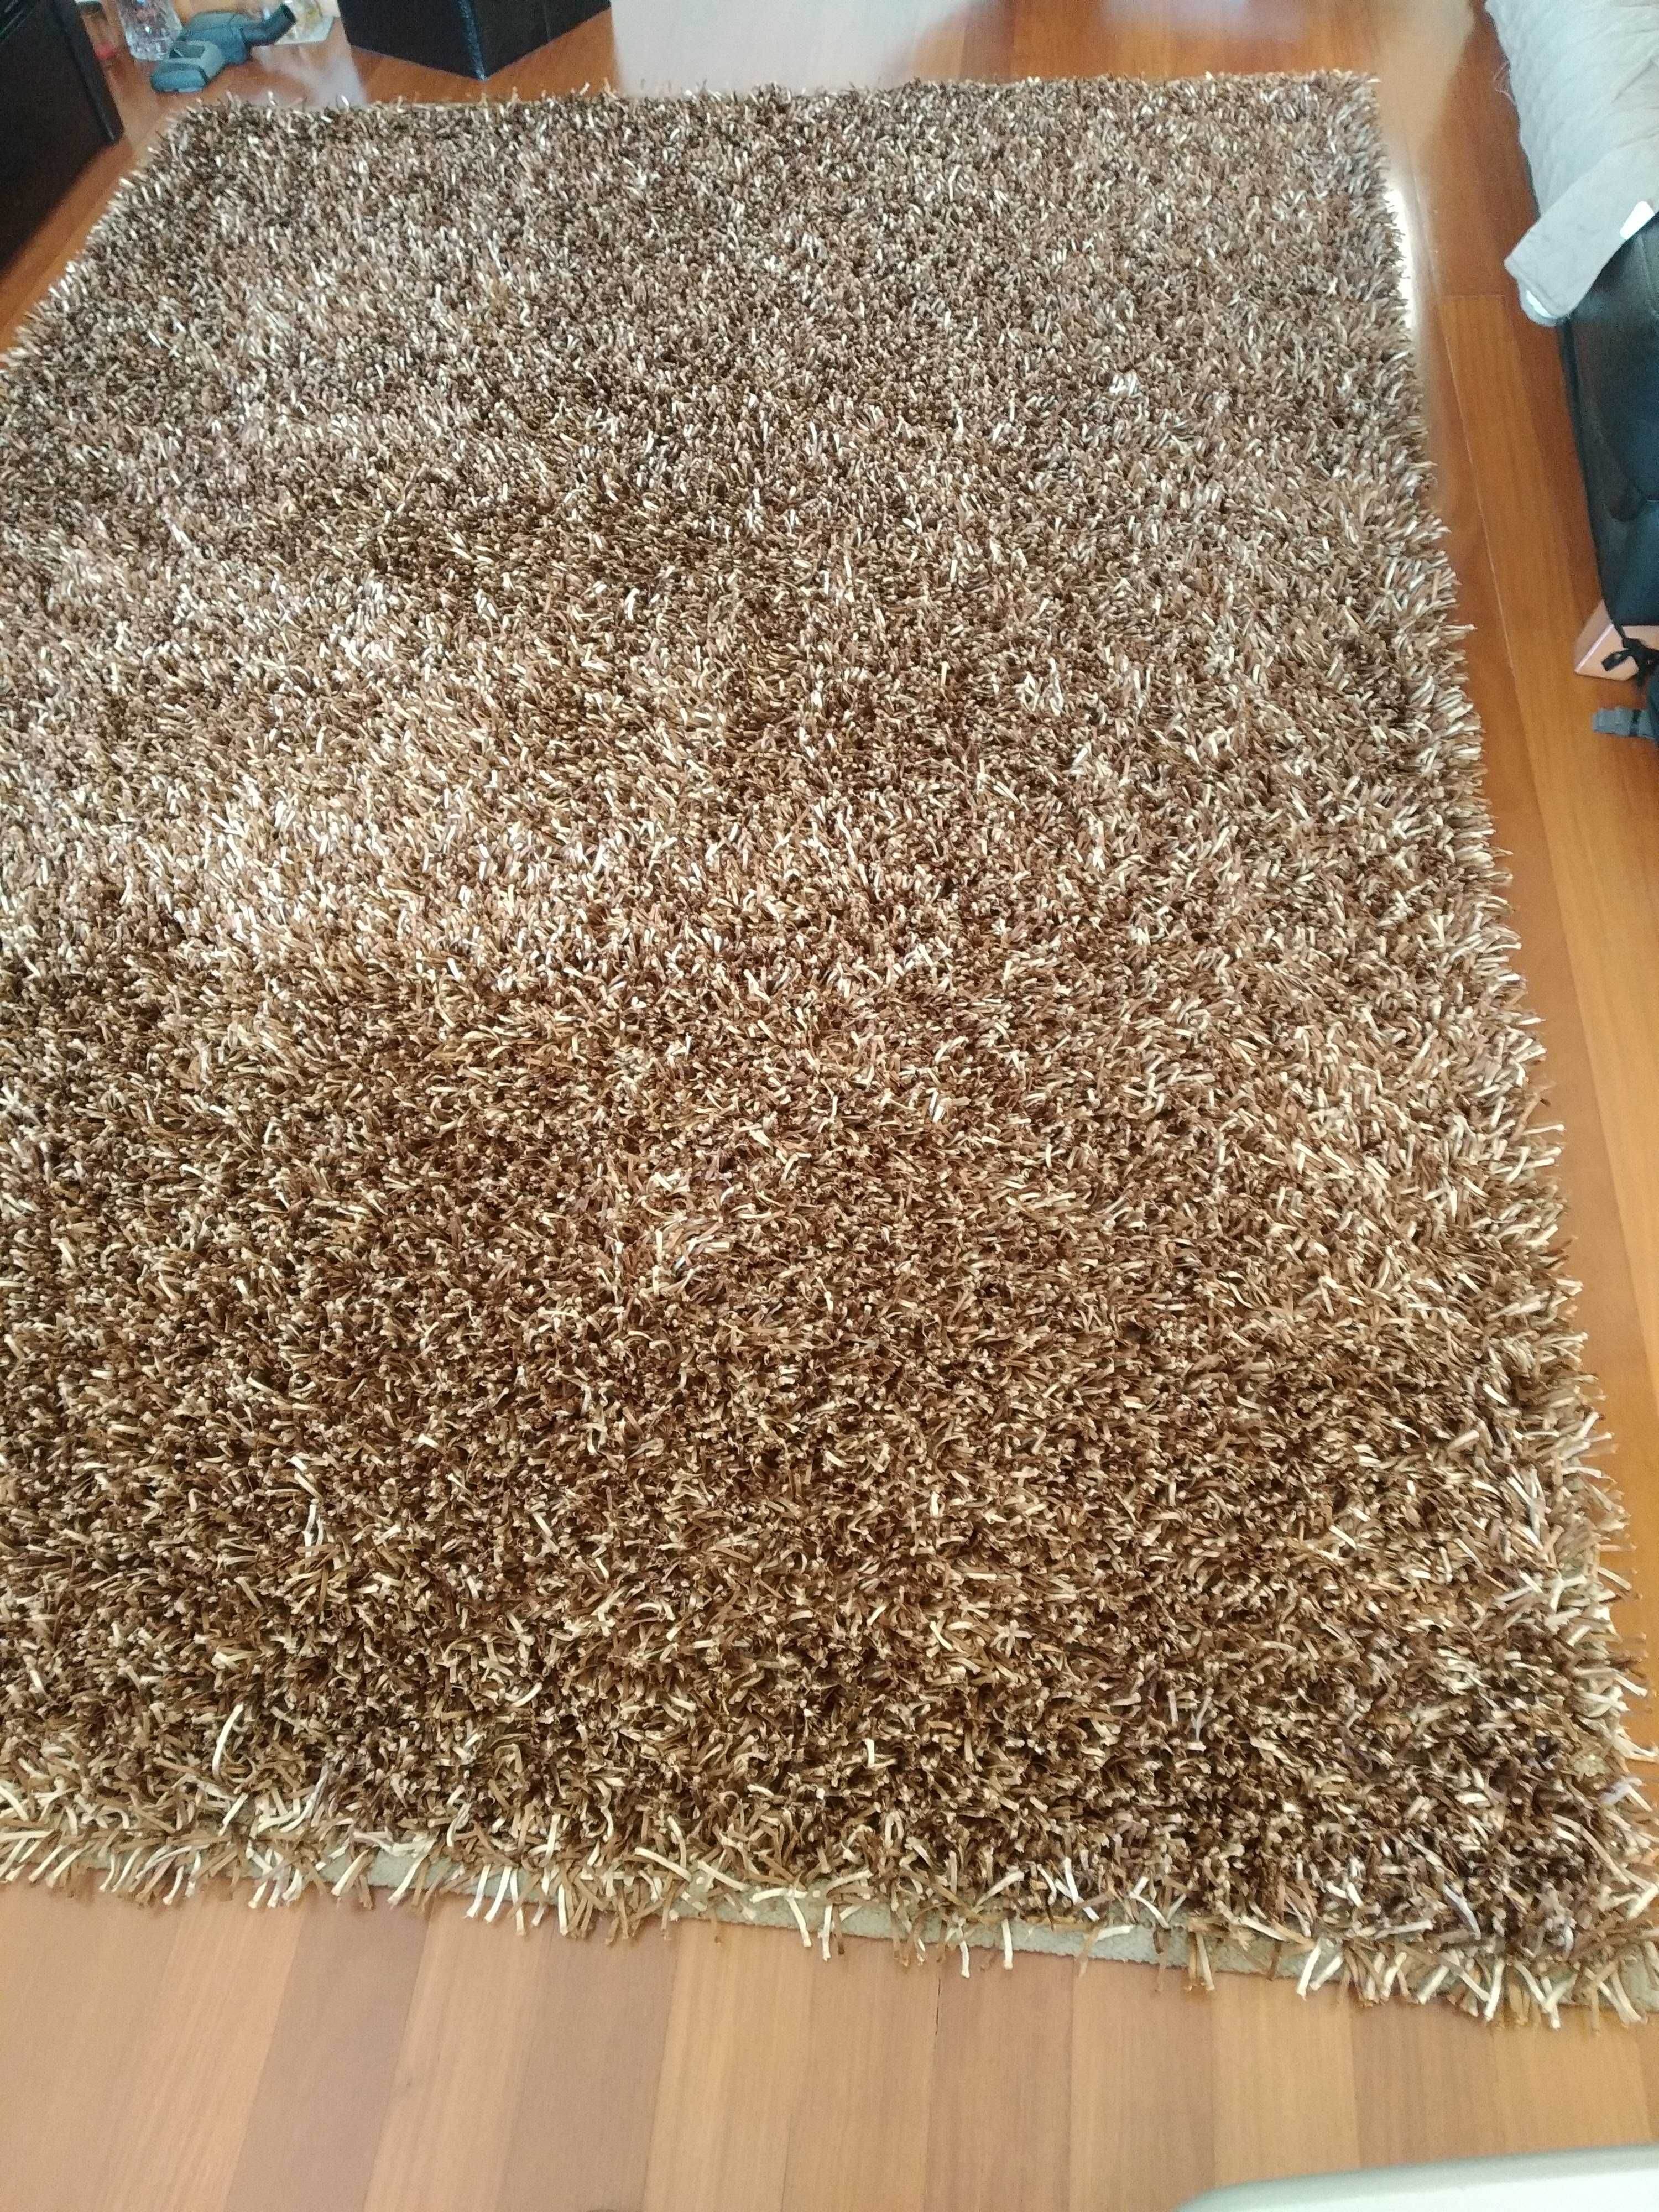 Carpete pelo alto Castanho e Bege - 2m X 3m